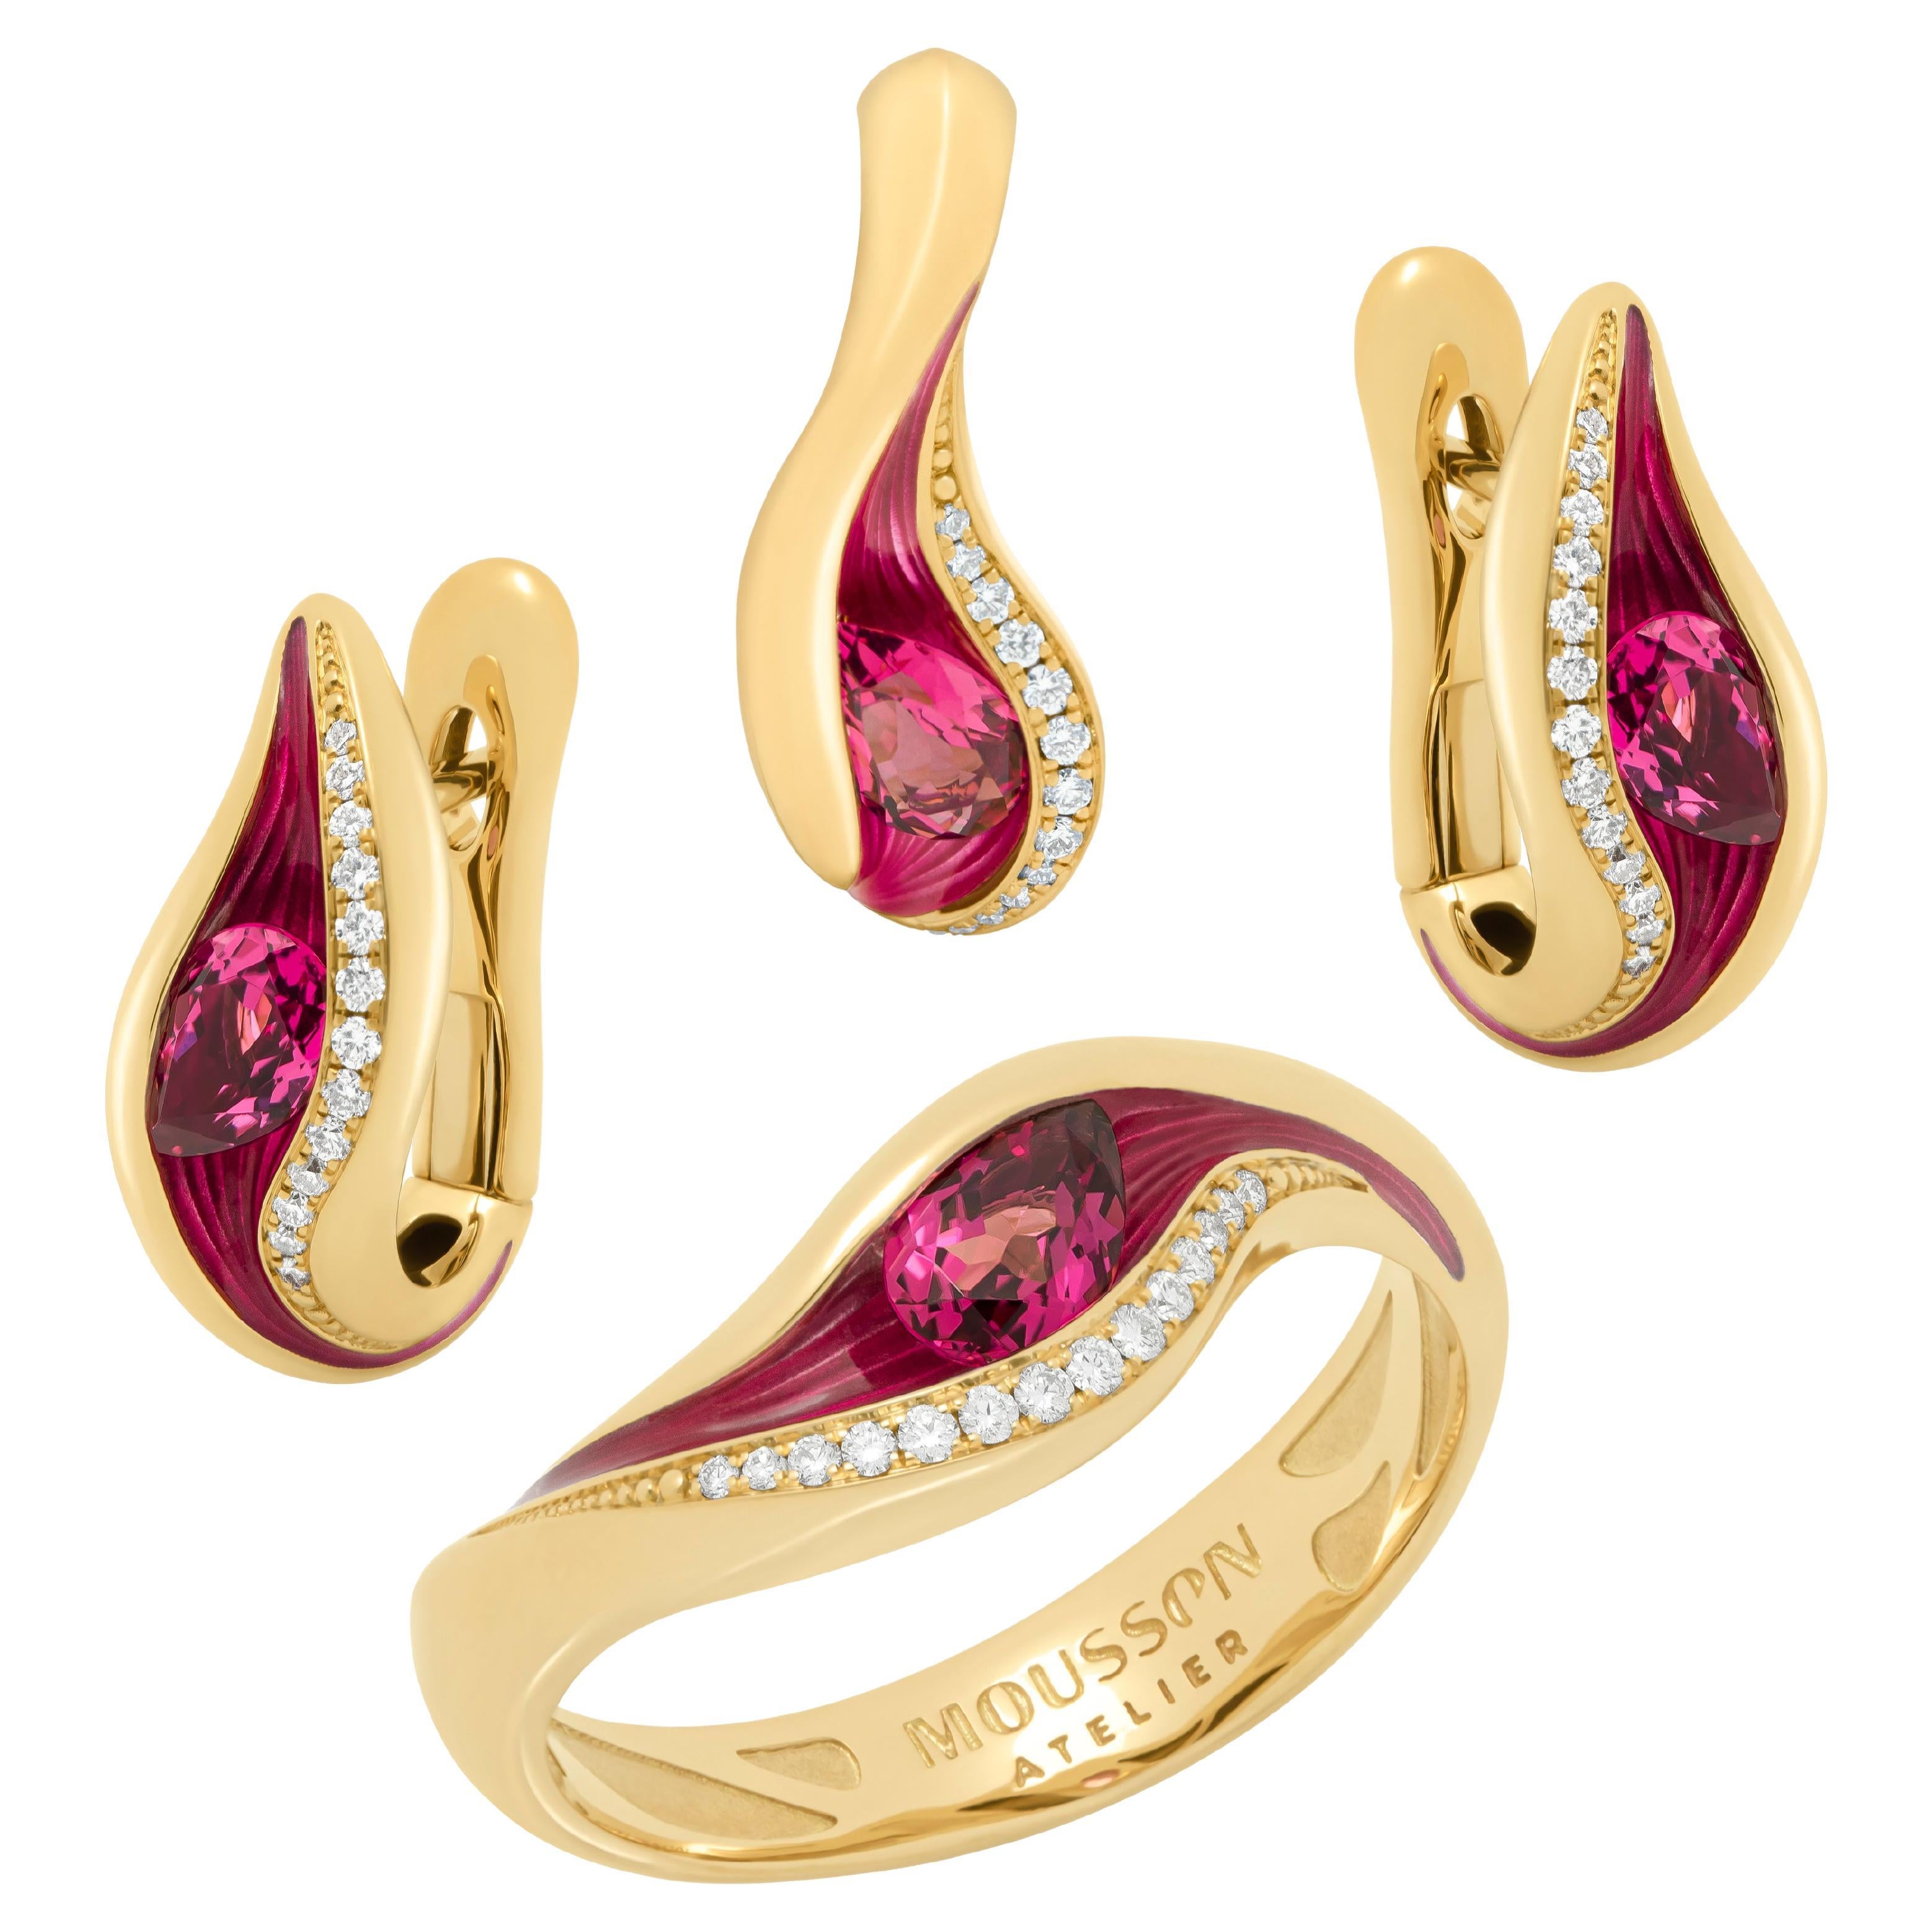 Suite aus rosa Turmalin, Diamanten und Emaille aus 18 Karat Gelbgold mit Meltierten Farben